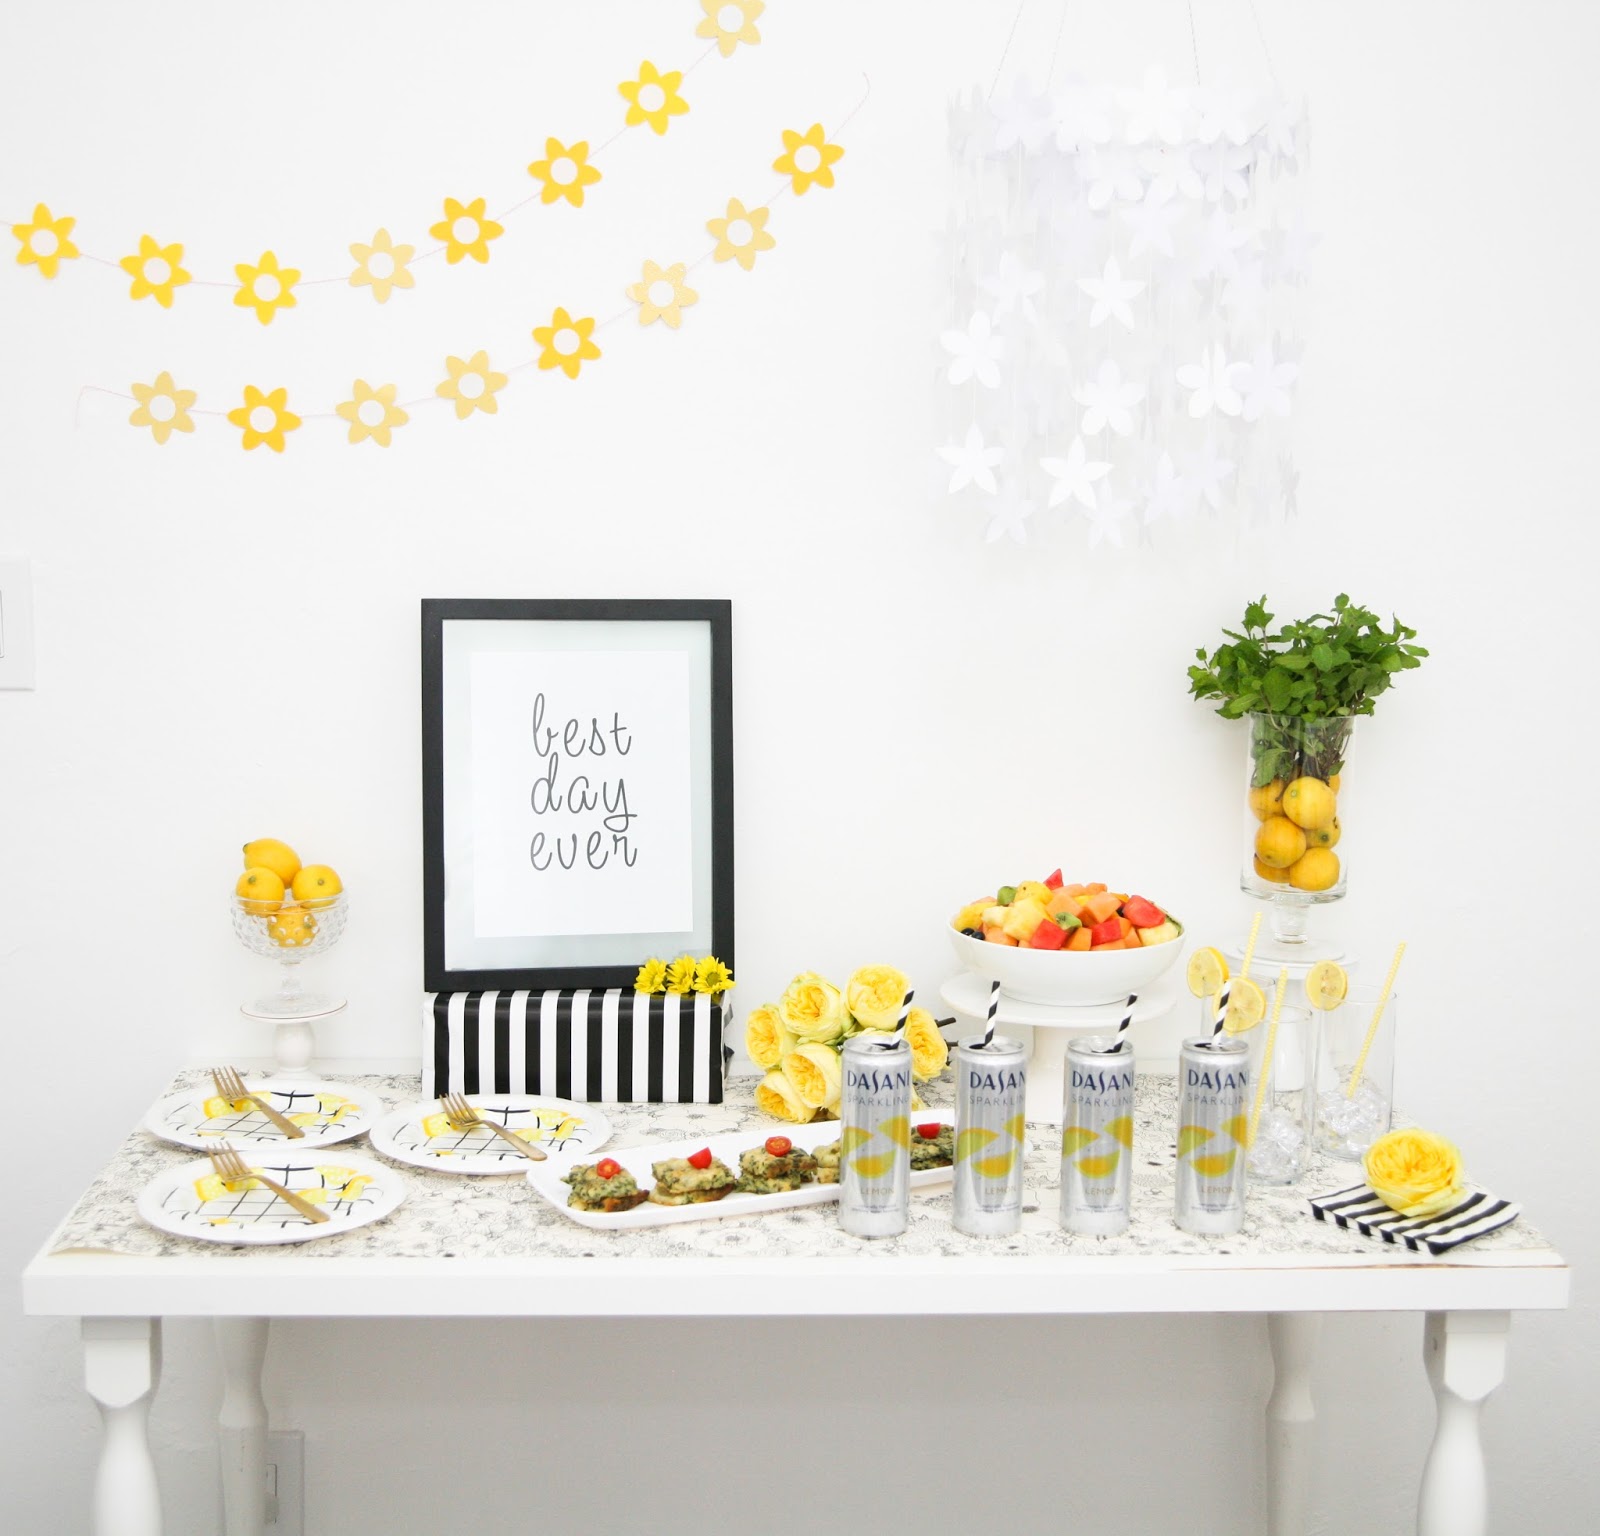 Brunch Party Ideas: Lemon and Stripes Brunch by The Celebration Stylist